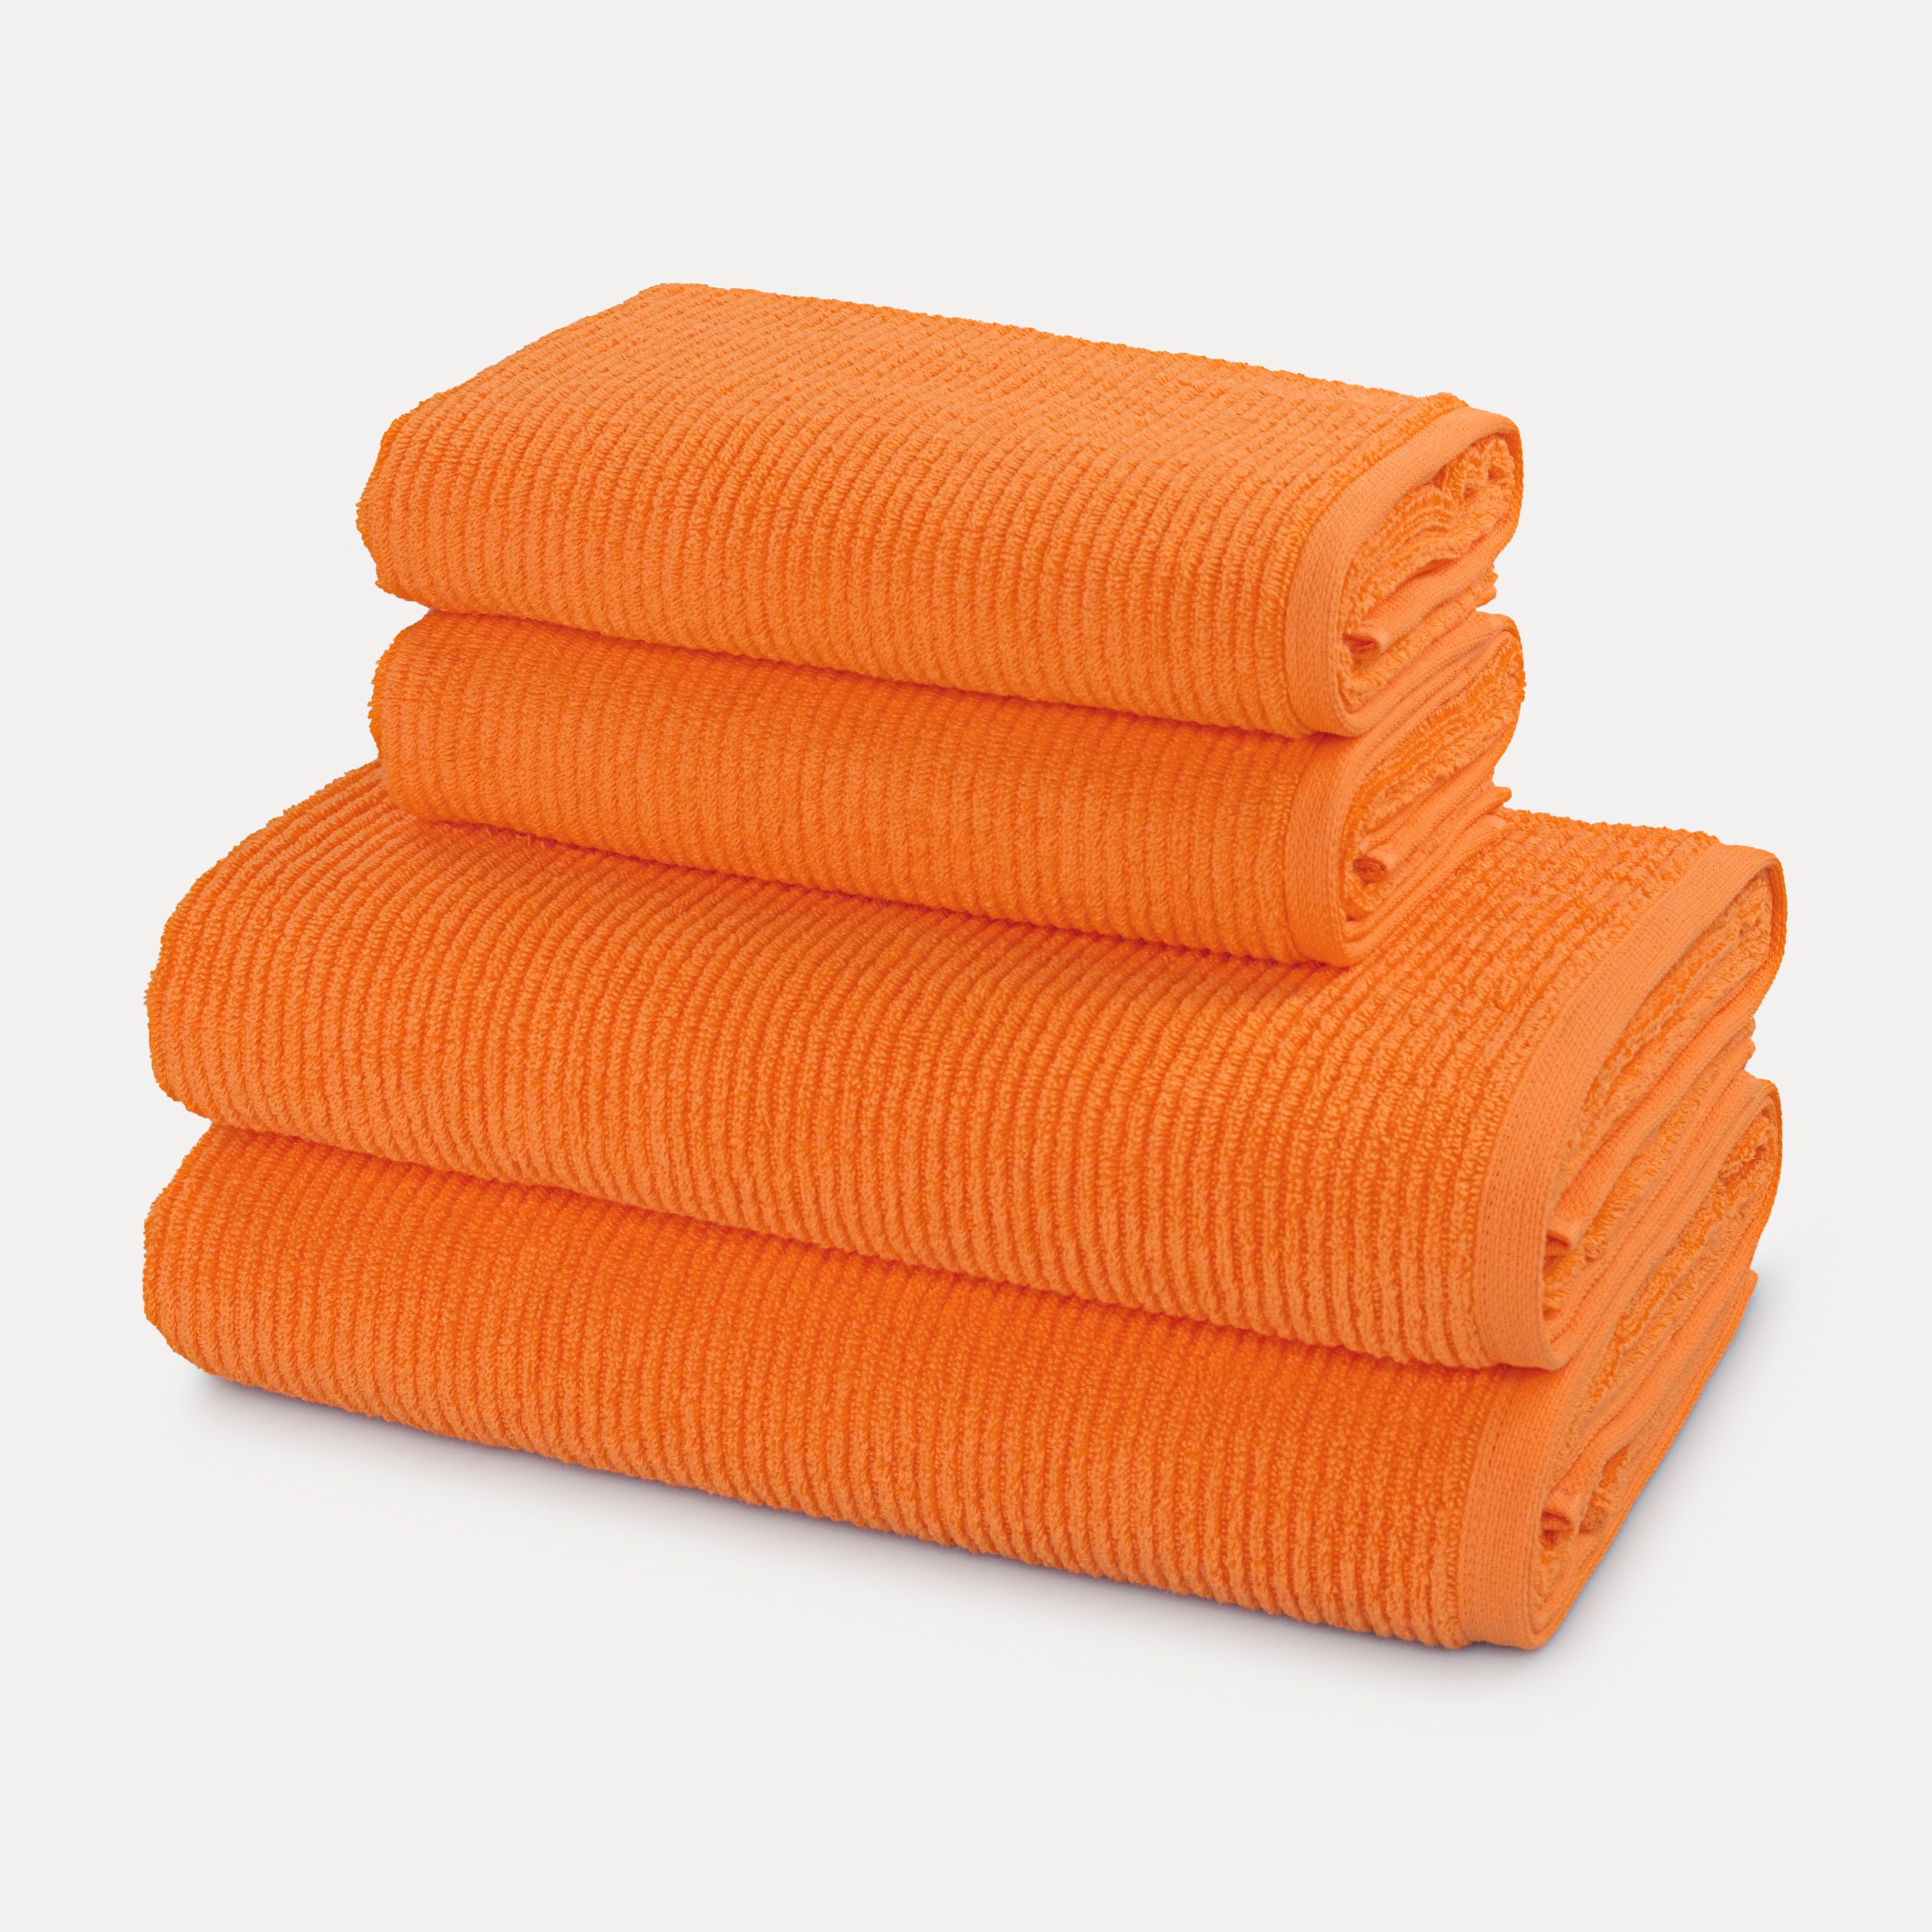 MÖVE 4-TLG (orange)| Orange Elements MÖVE Handtuchset